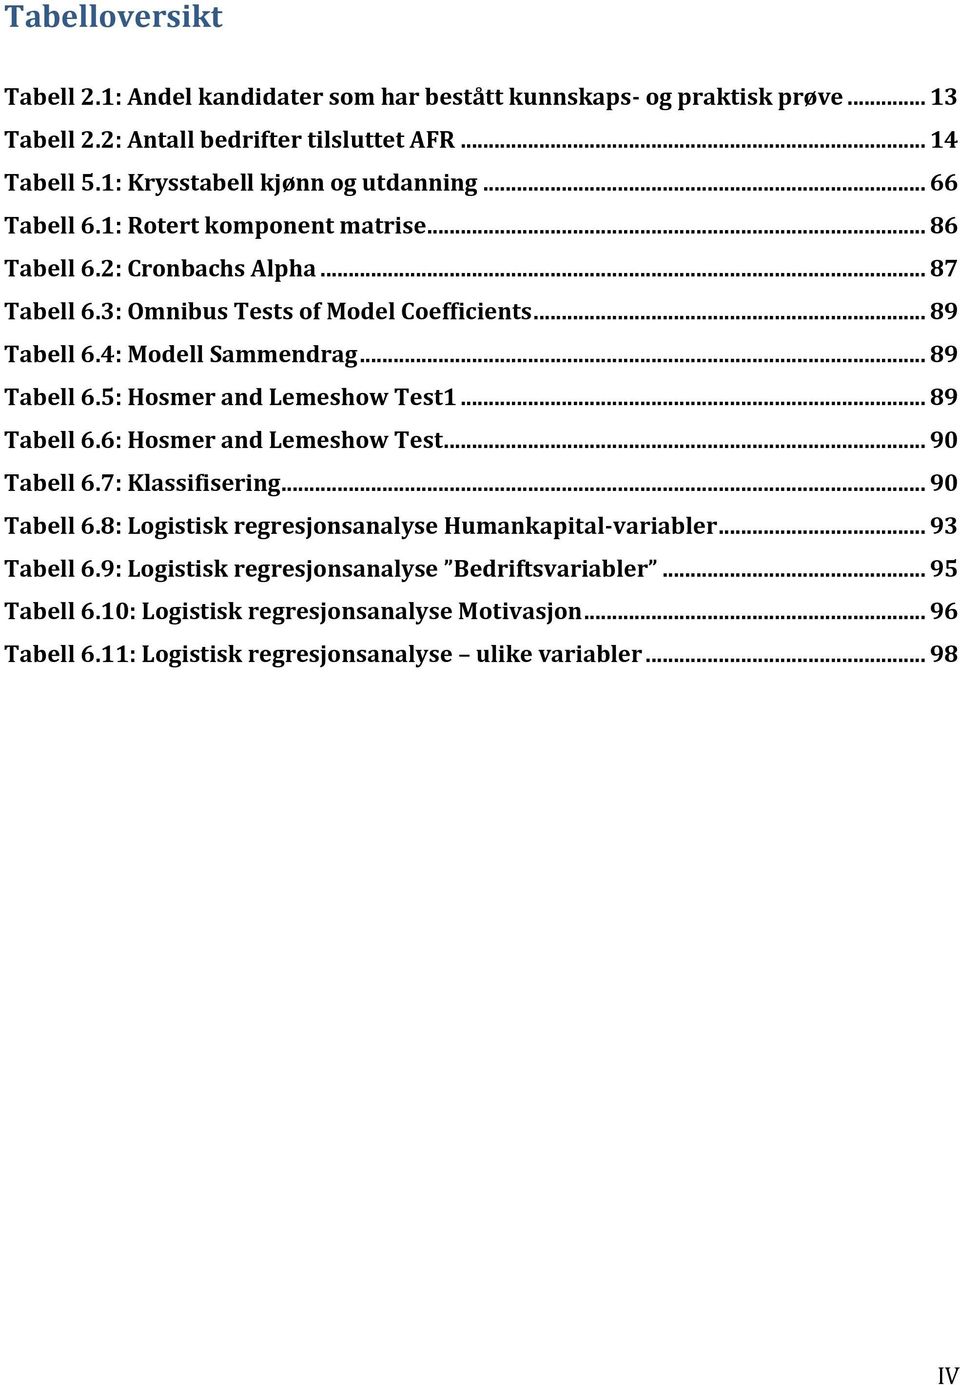 4: Modell Sammendrag... 89 Tabell 6.5: Hosmer and Lemeshow Test1... 89 Tabell 6.6: Hosmer and Lemeshow Test... 90 Tabell 6.7: Klassifisering... 90 Tabell 6.8: Logistisk regresjonsanalyse Humankapital-variabler.